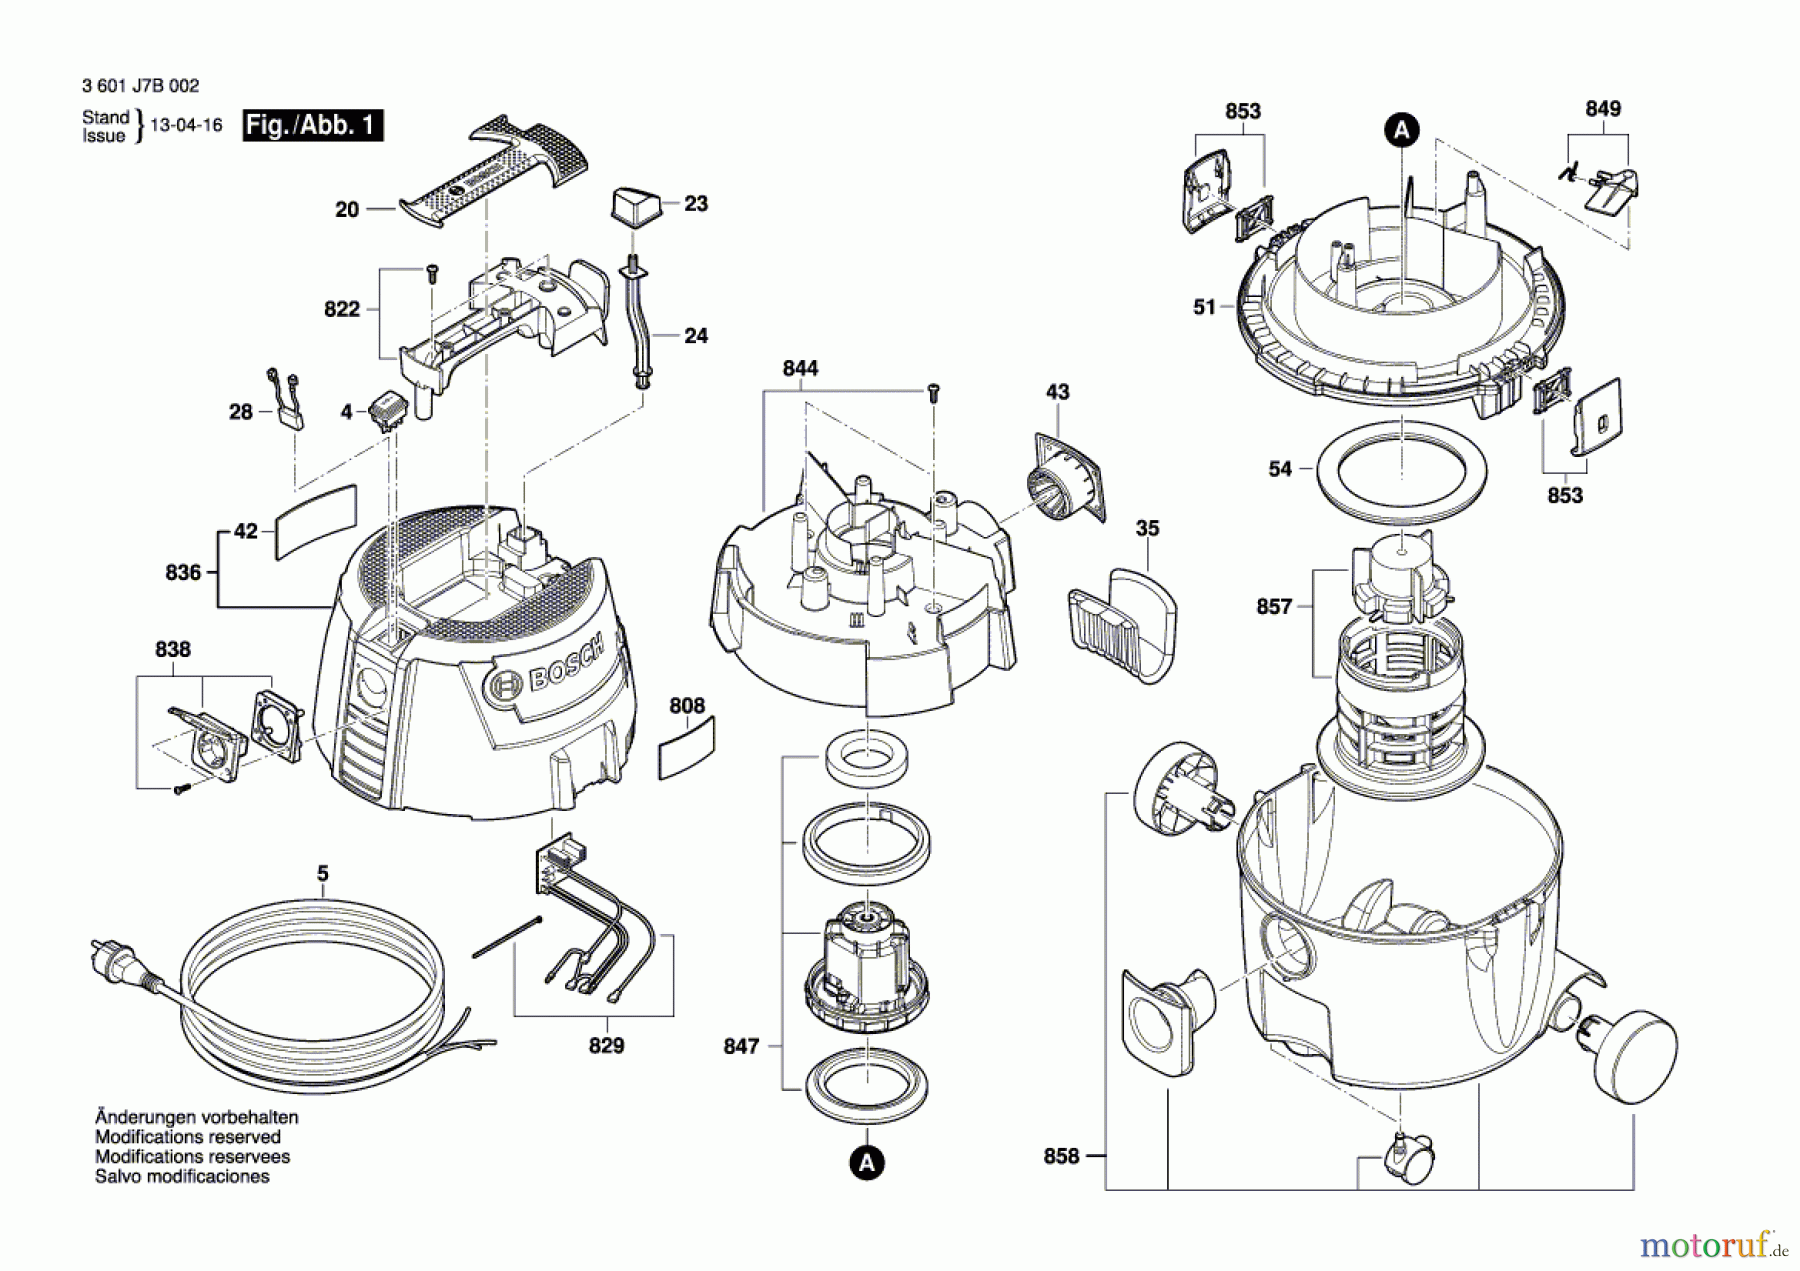  Bosch Werkzeug Allzwecksauger --- Seite 1